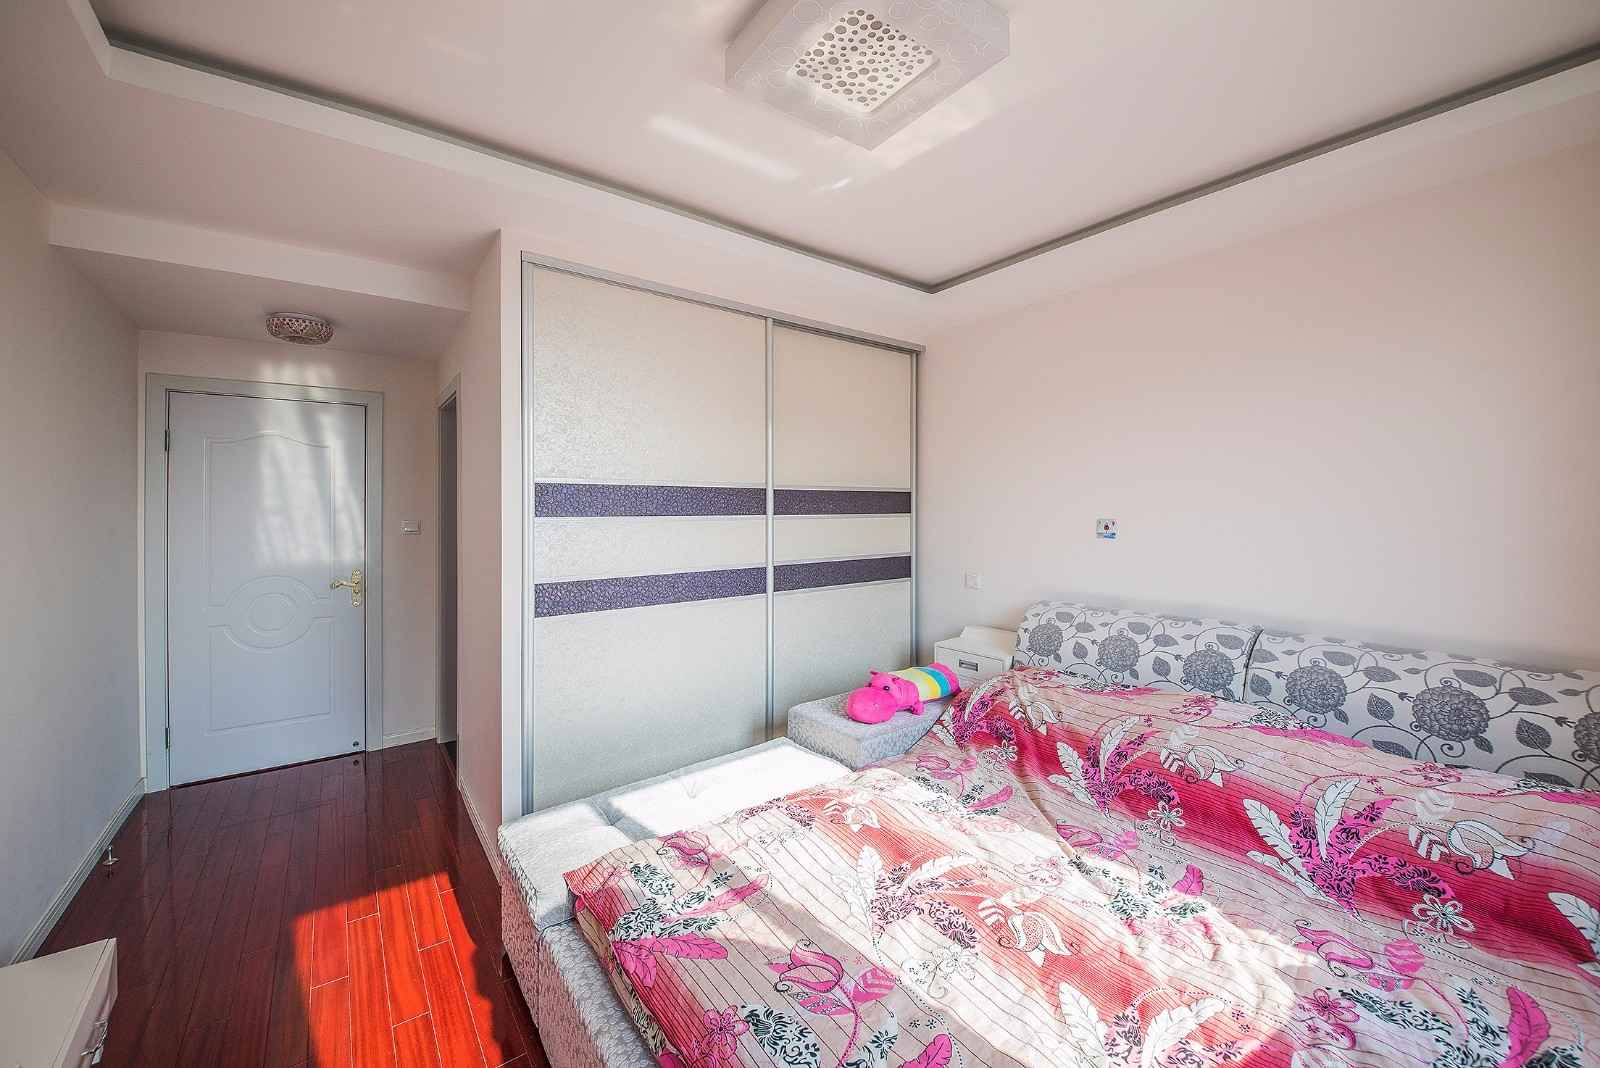 89平地中海风格卧室装修效果图